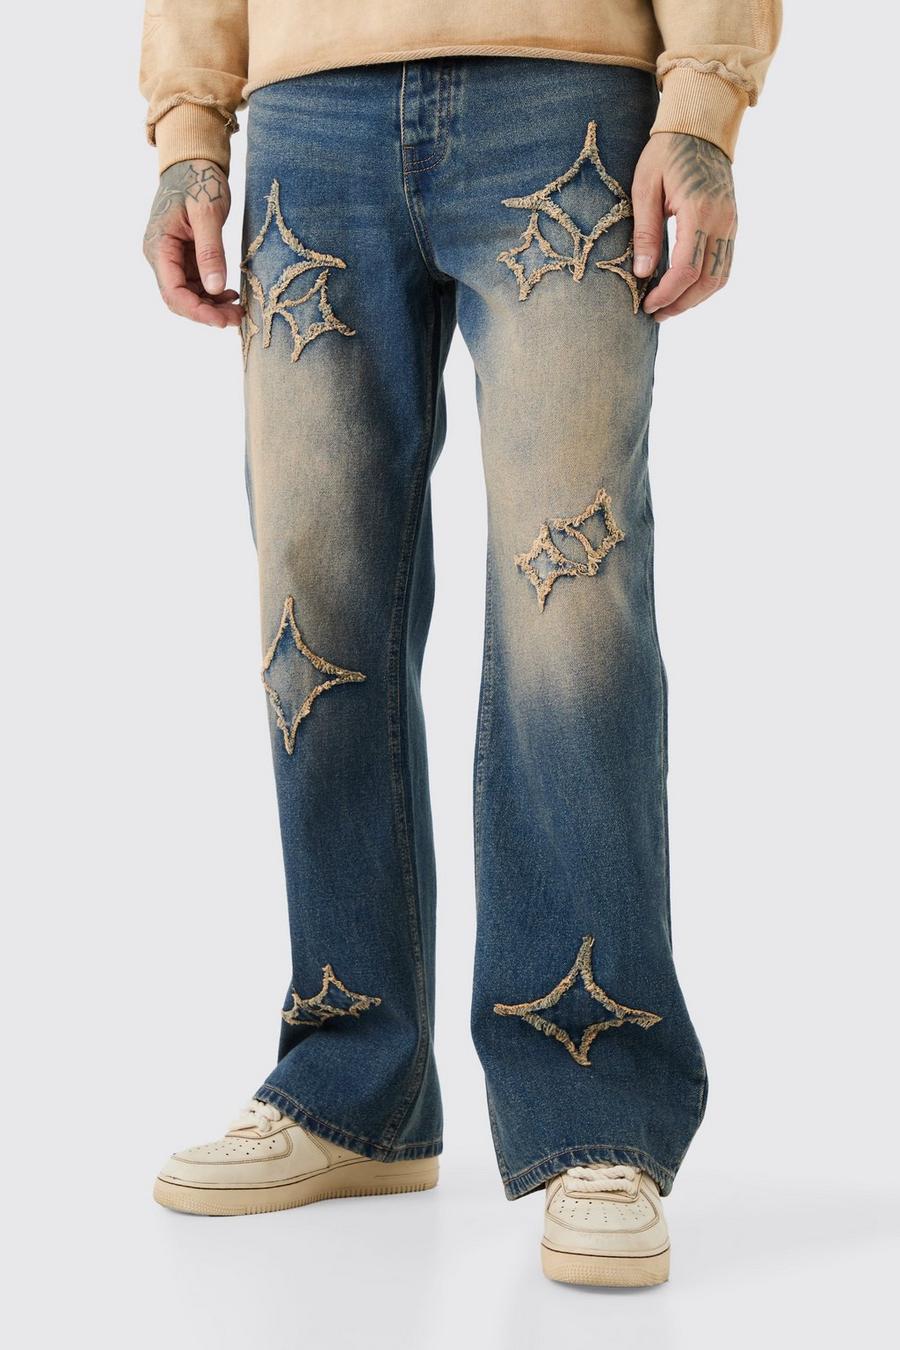 Jeans Tall rilassati a zampa in tessuto rigido con applique e inserti, Antique wash